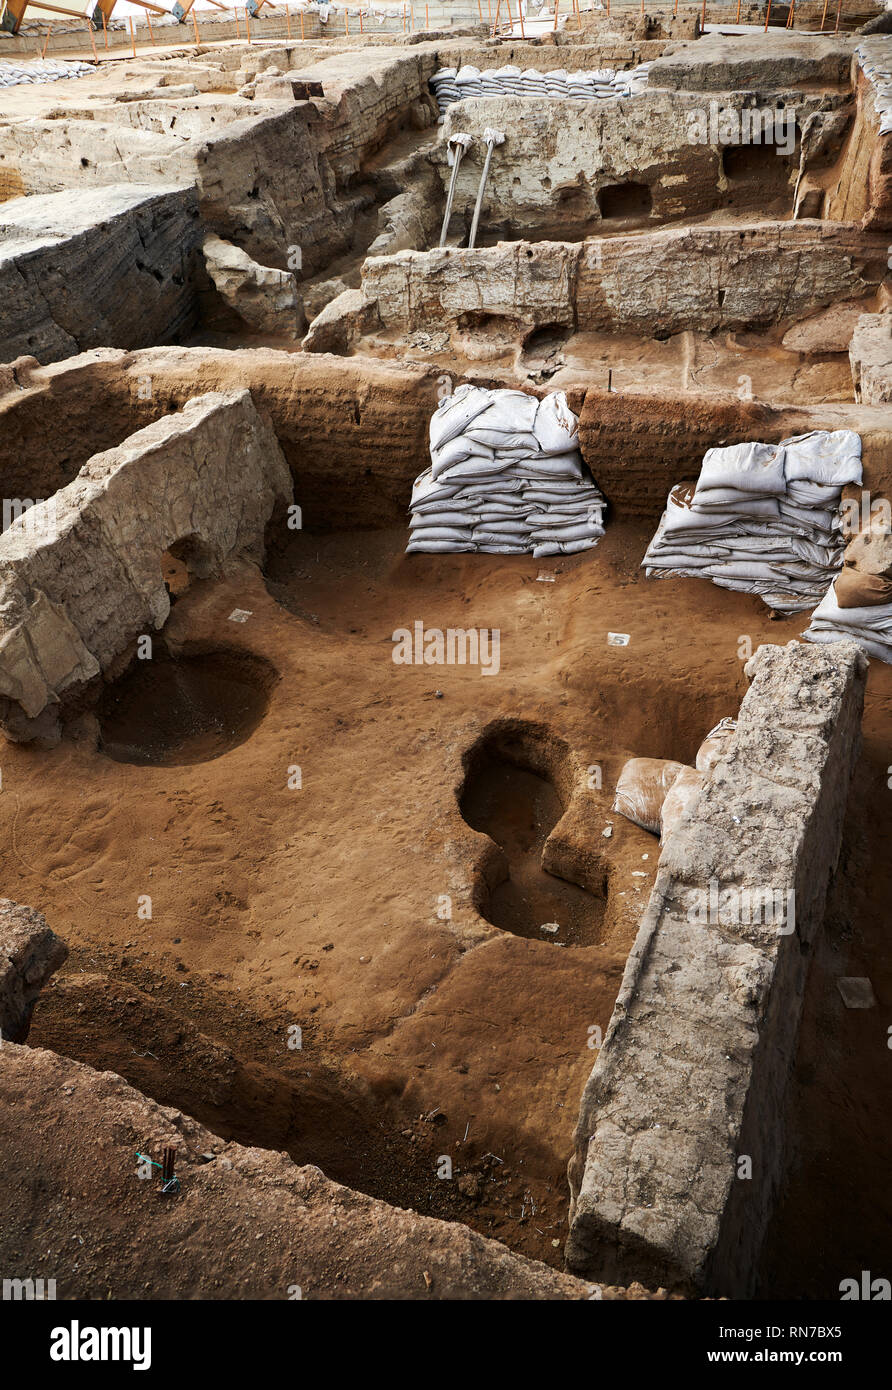 Les fosses d'enfouissement vide à l'intérieur d'une demeure néolithique de boue maisons en briques du nord zone Catalyhoyuk ecavation, site archéologique, Çumra, Konya, Turquie Banque D'Images